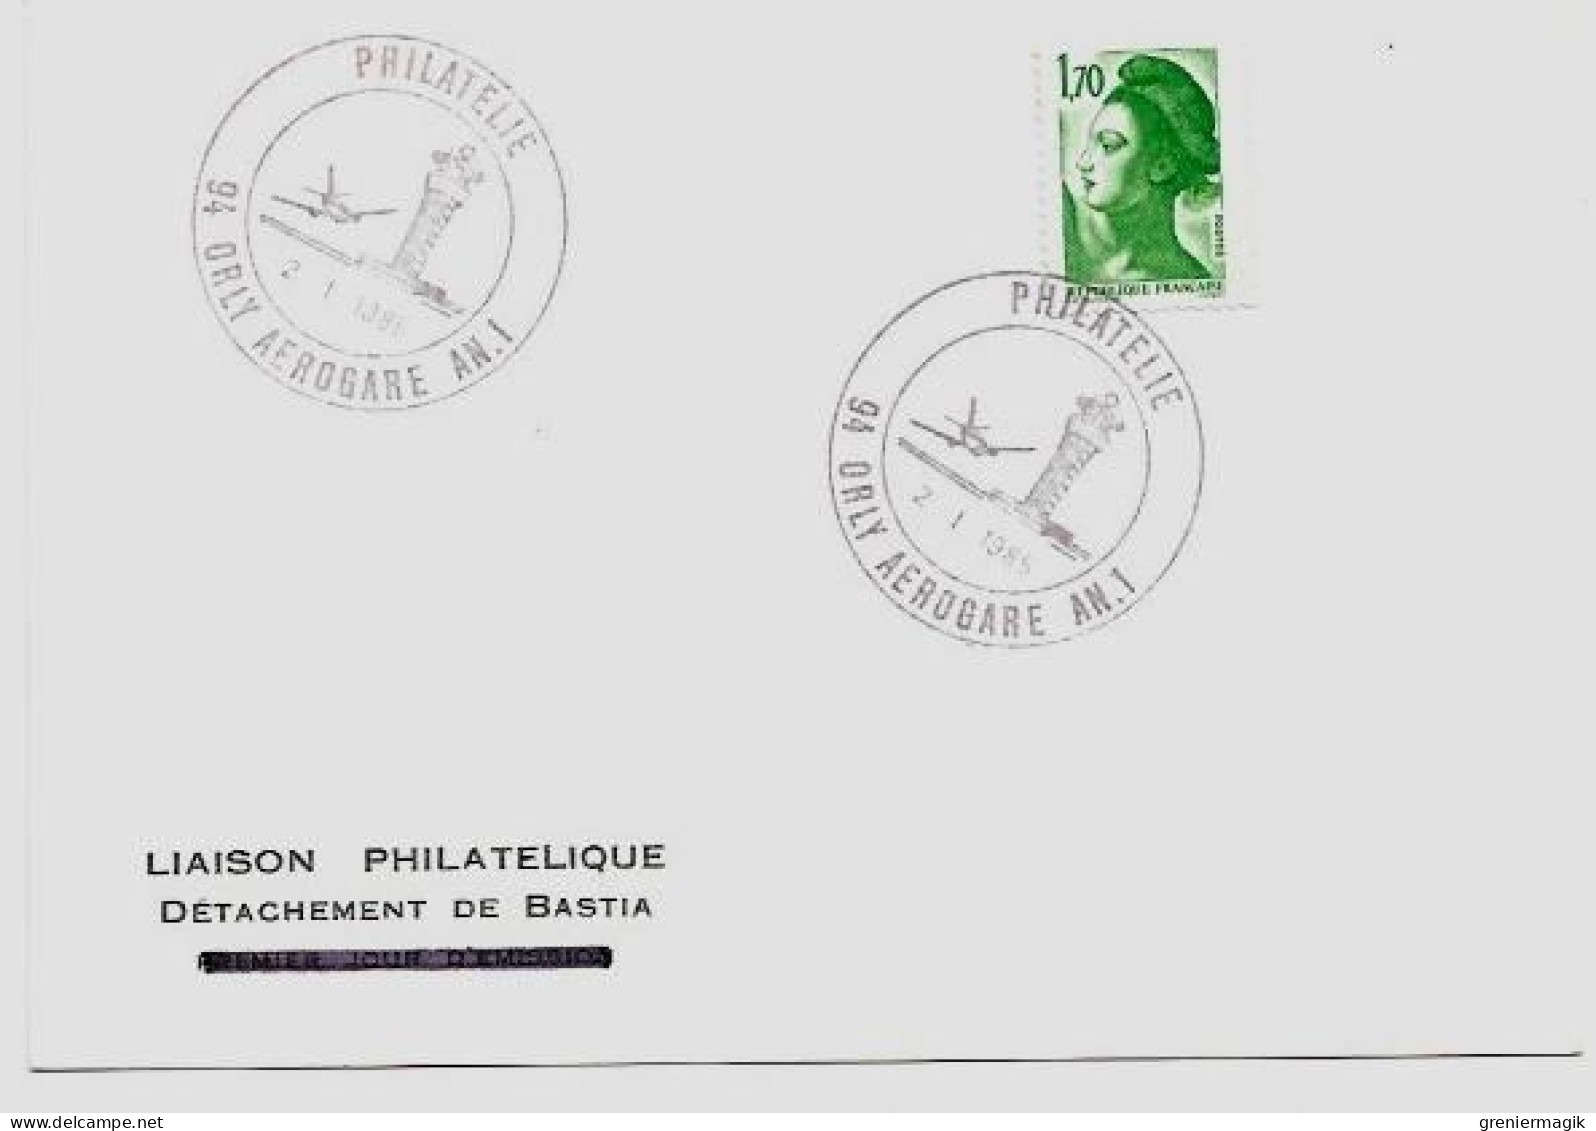 N°2318 Cachet Philatélie Orly Aérogare AN. 1 2/1/1985 (Tour De Contrôle) - Liaison Philatélique Bastia Liberté 1,70 Vert - Matasellos Provisorios